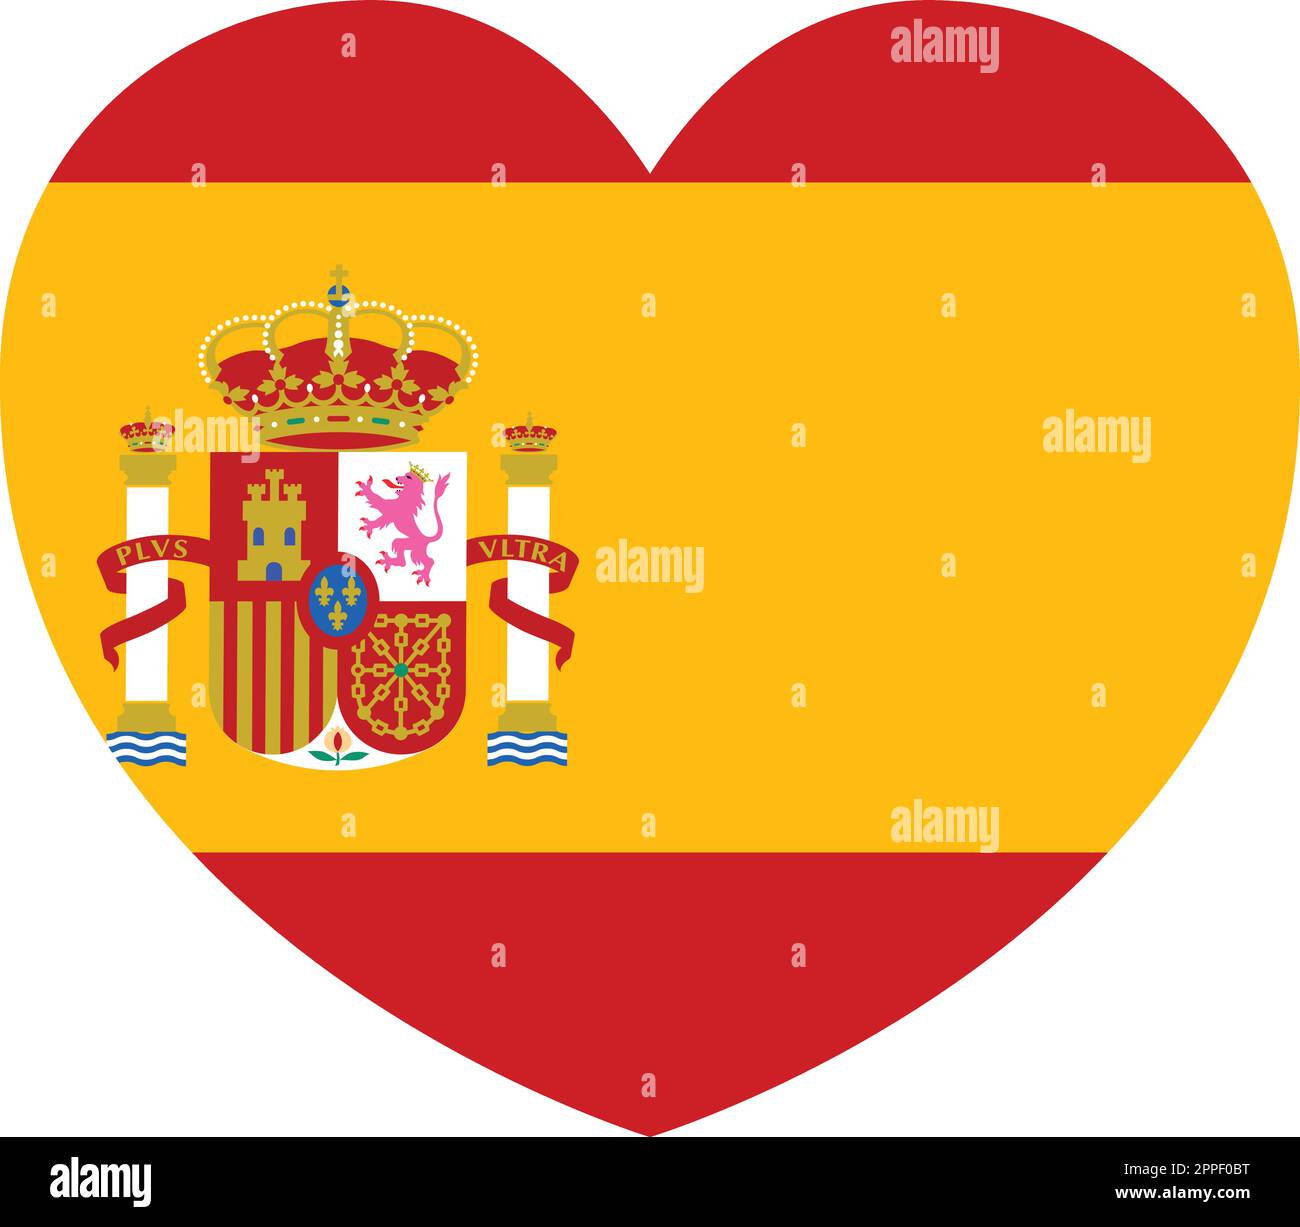 Espagne Espagnol drapeau coeur concept Illustration de Vecteur